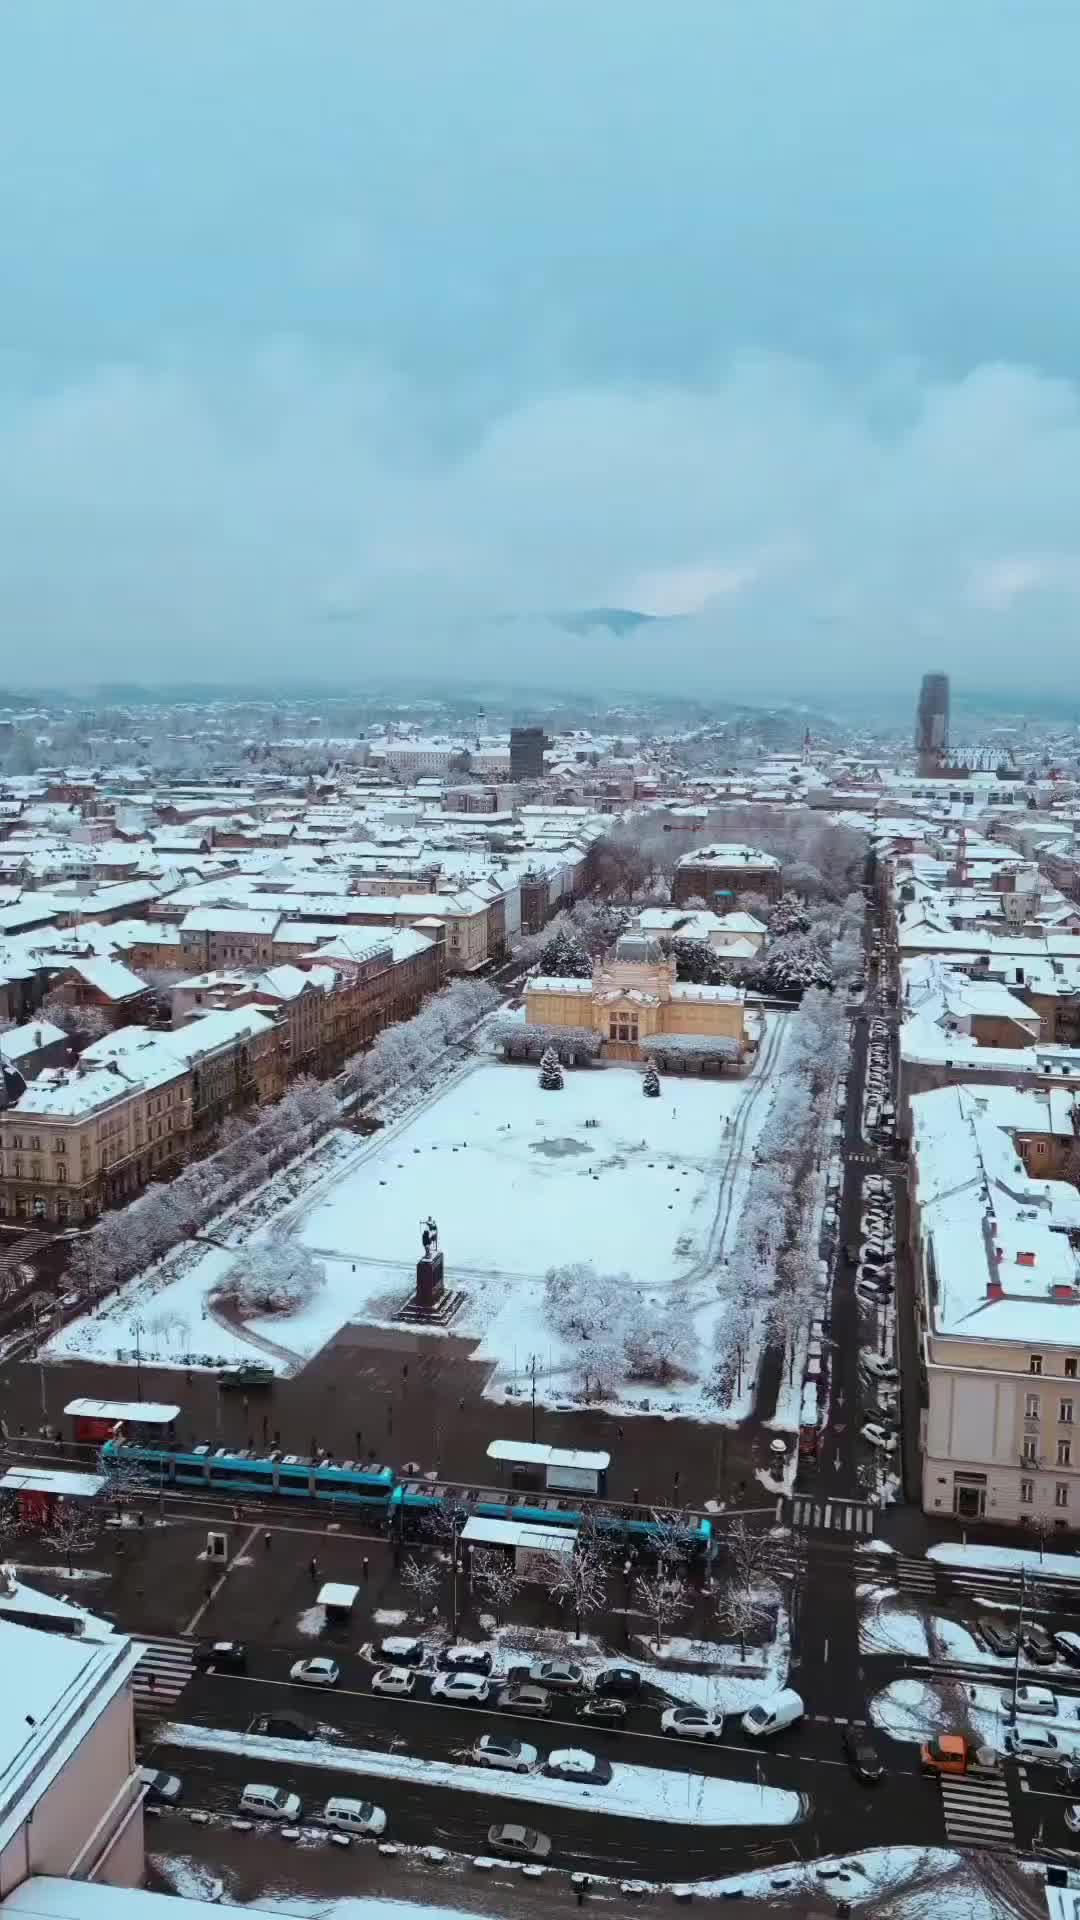 Discover Zagreb’s Winter Magic at Trg kralja Tomislava